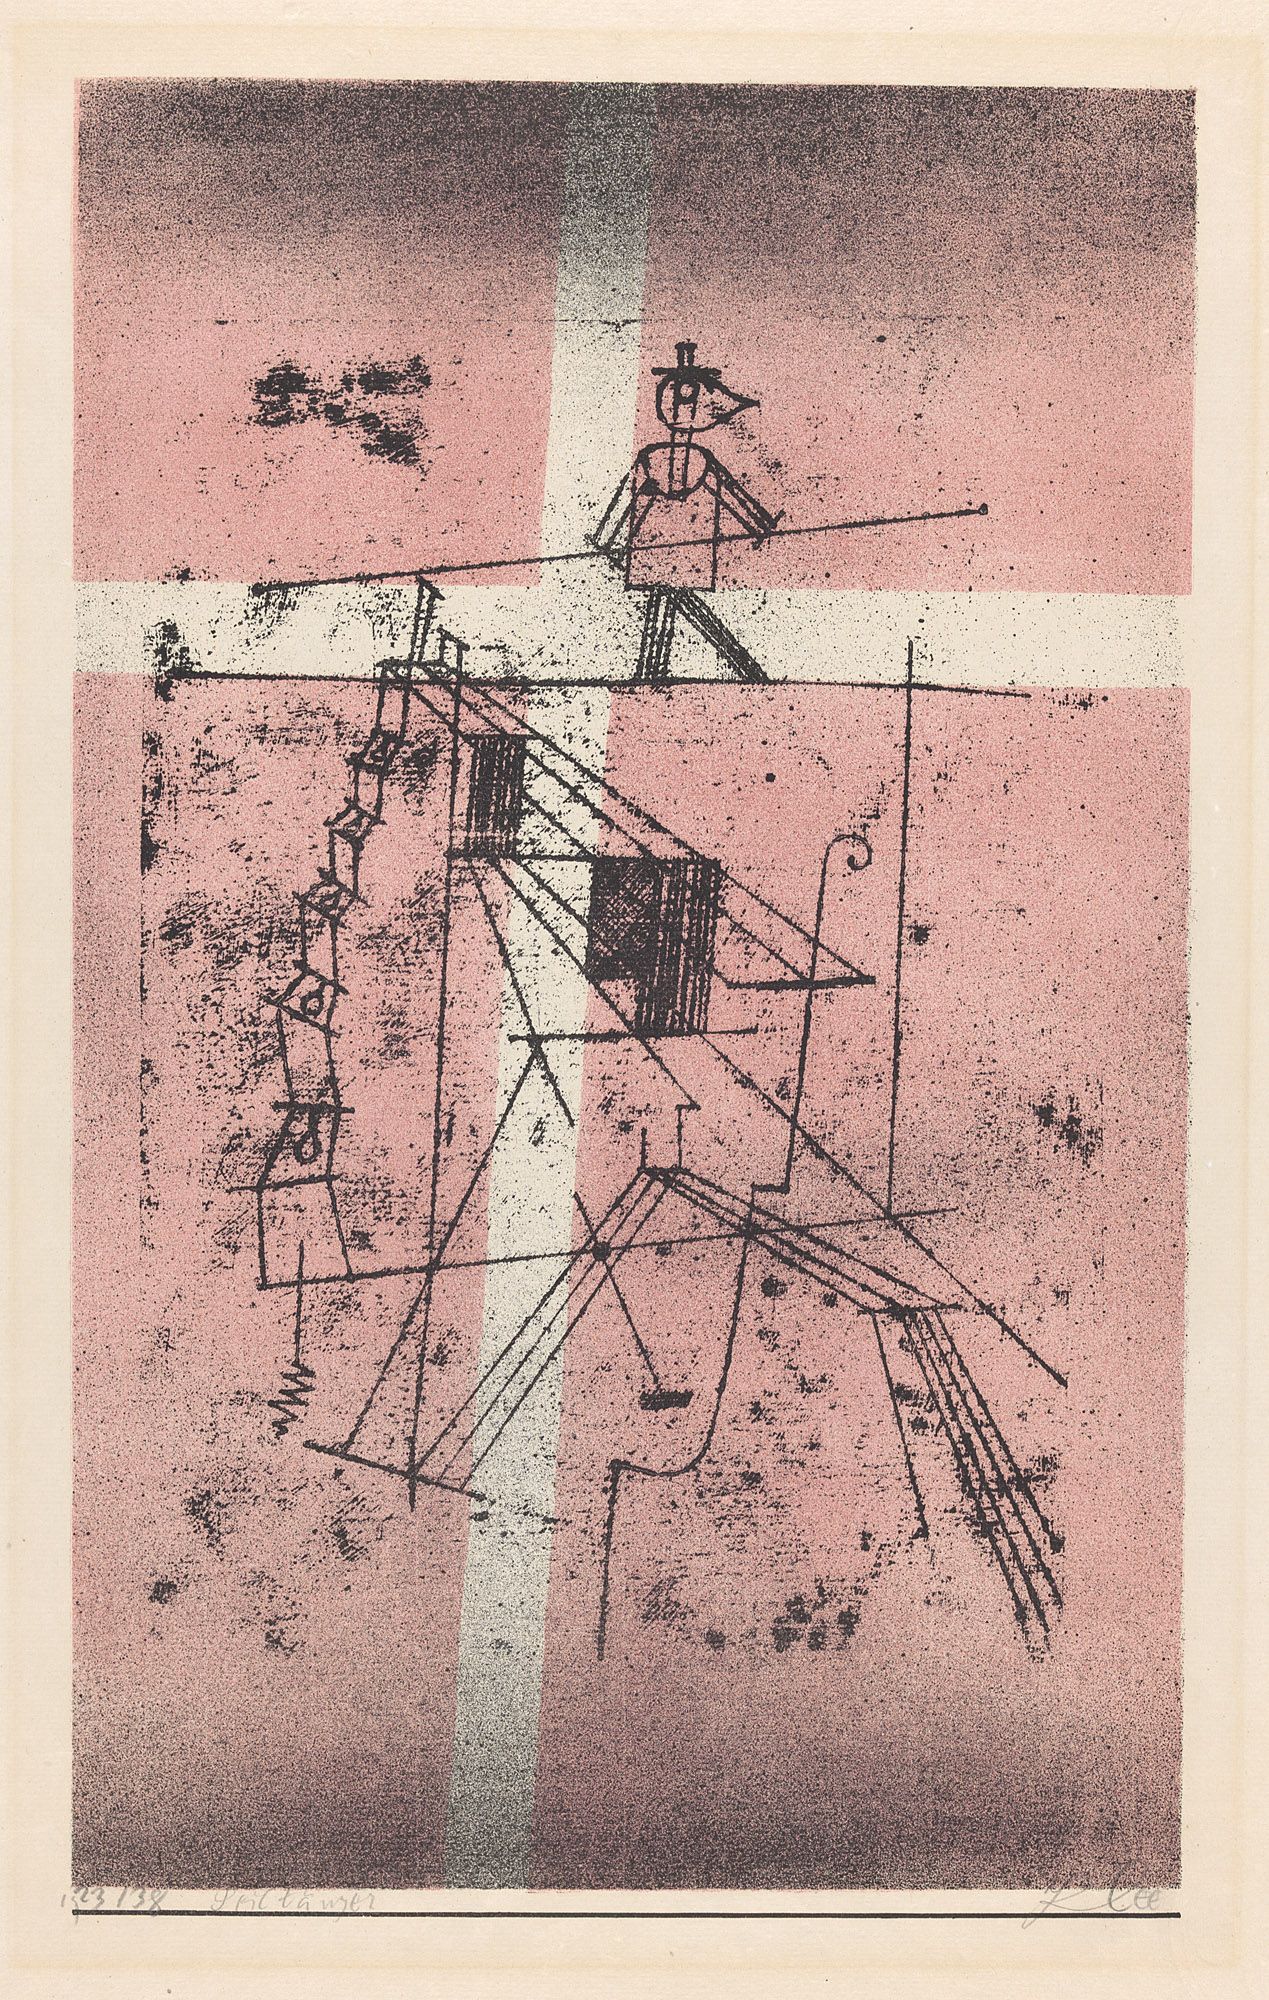 İp cambazı by Paul Klee - 1923 